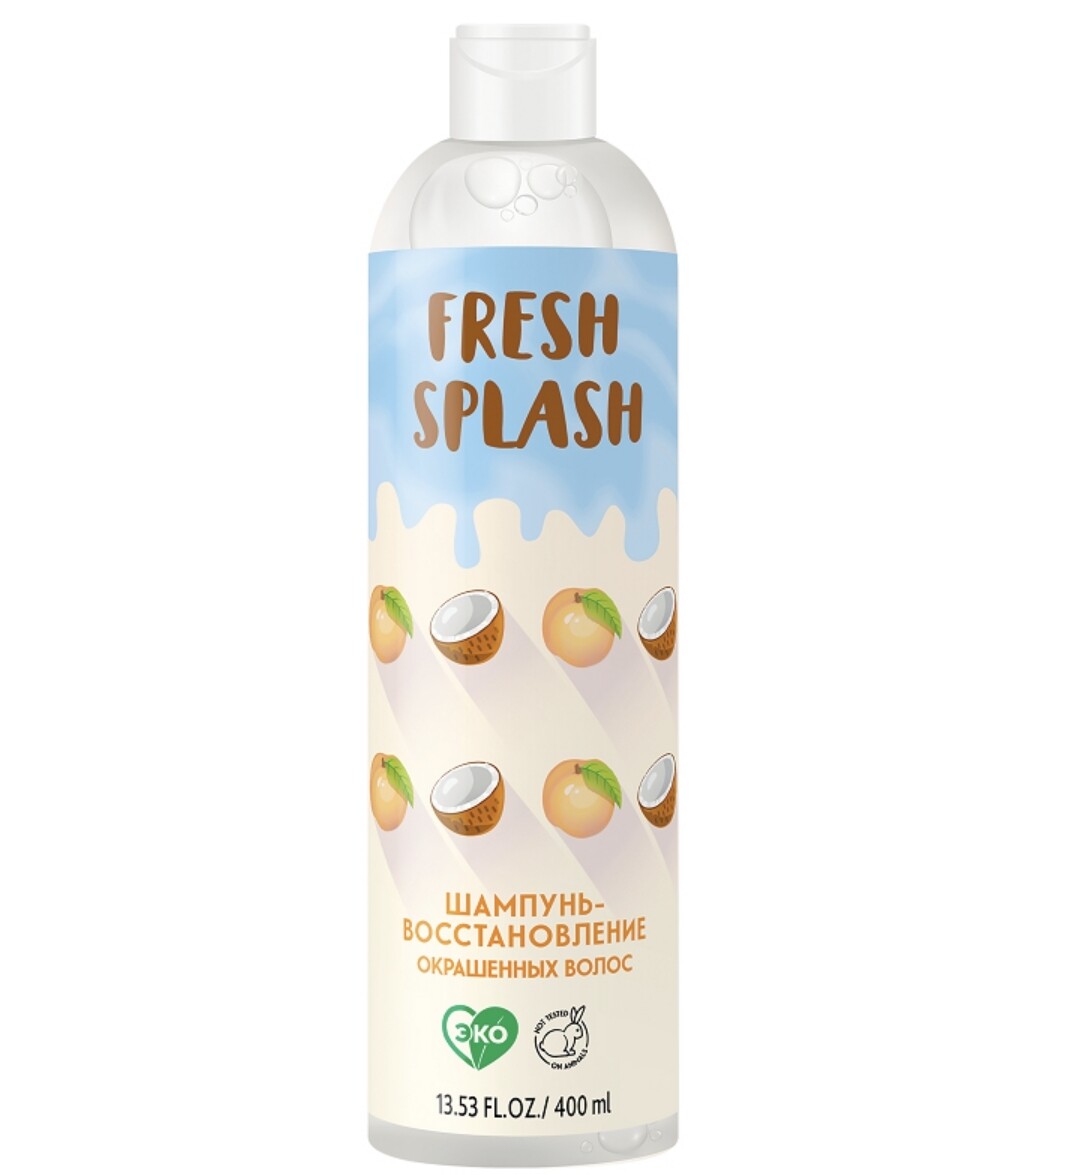 Fresh splash шампунь-восстановление окрашенных волос,400 мл splash page